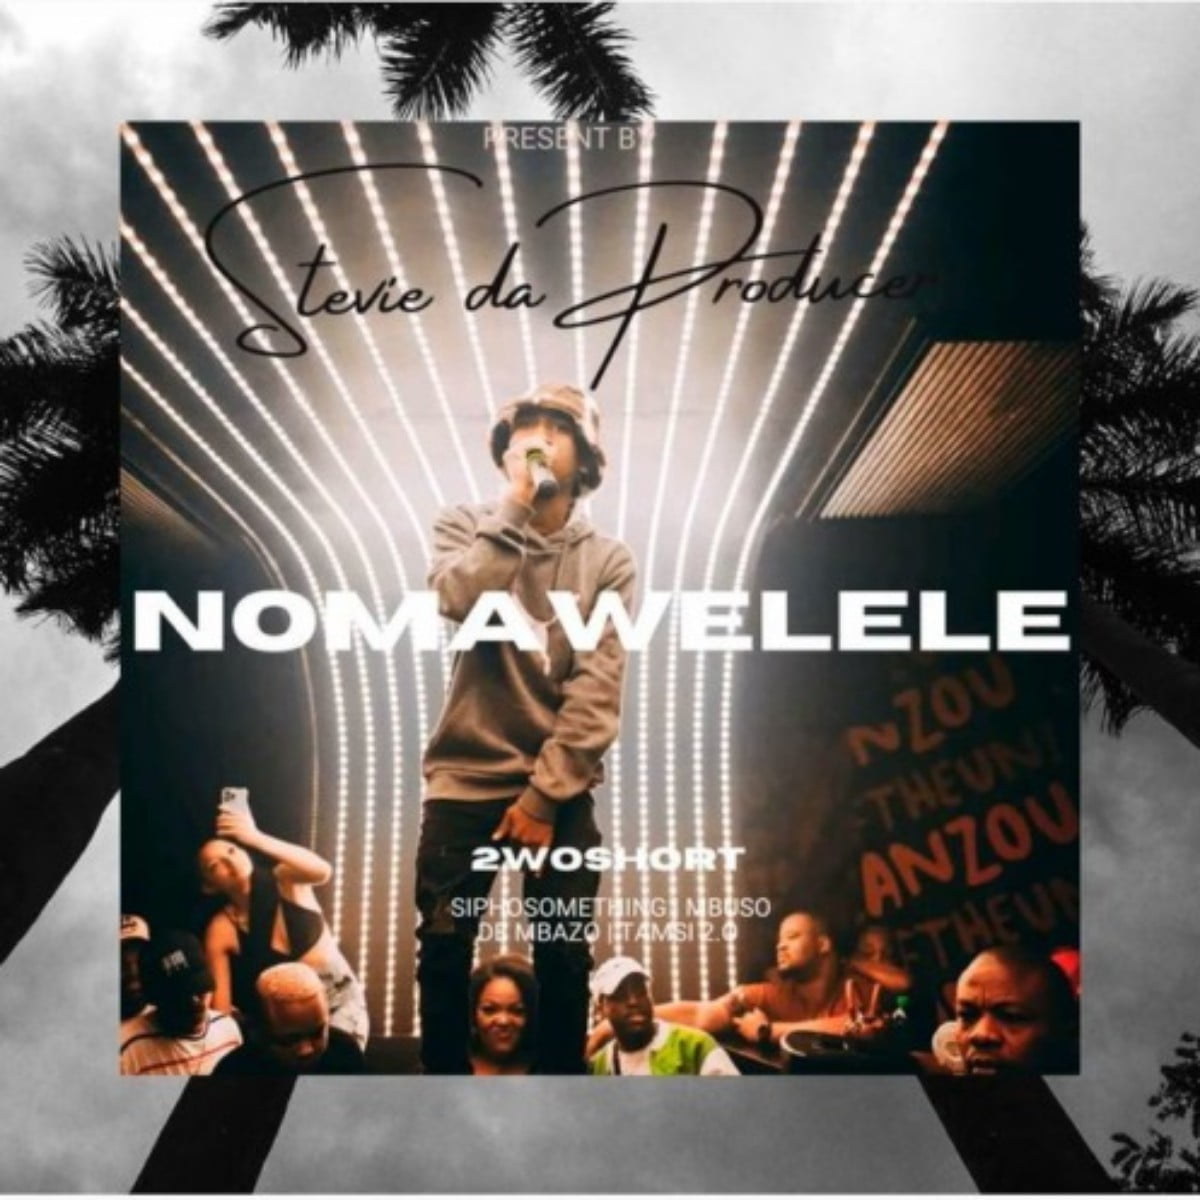 Stevie Da Producer – Nomawelele ft. 2woshort, Siphosomething, Mbuso De Mbazo & Tamsi 2.0 mp3 download free lyrics